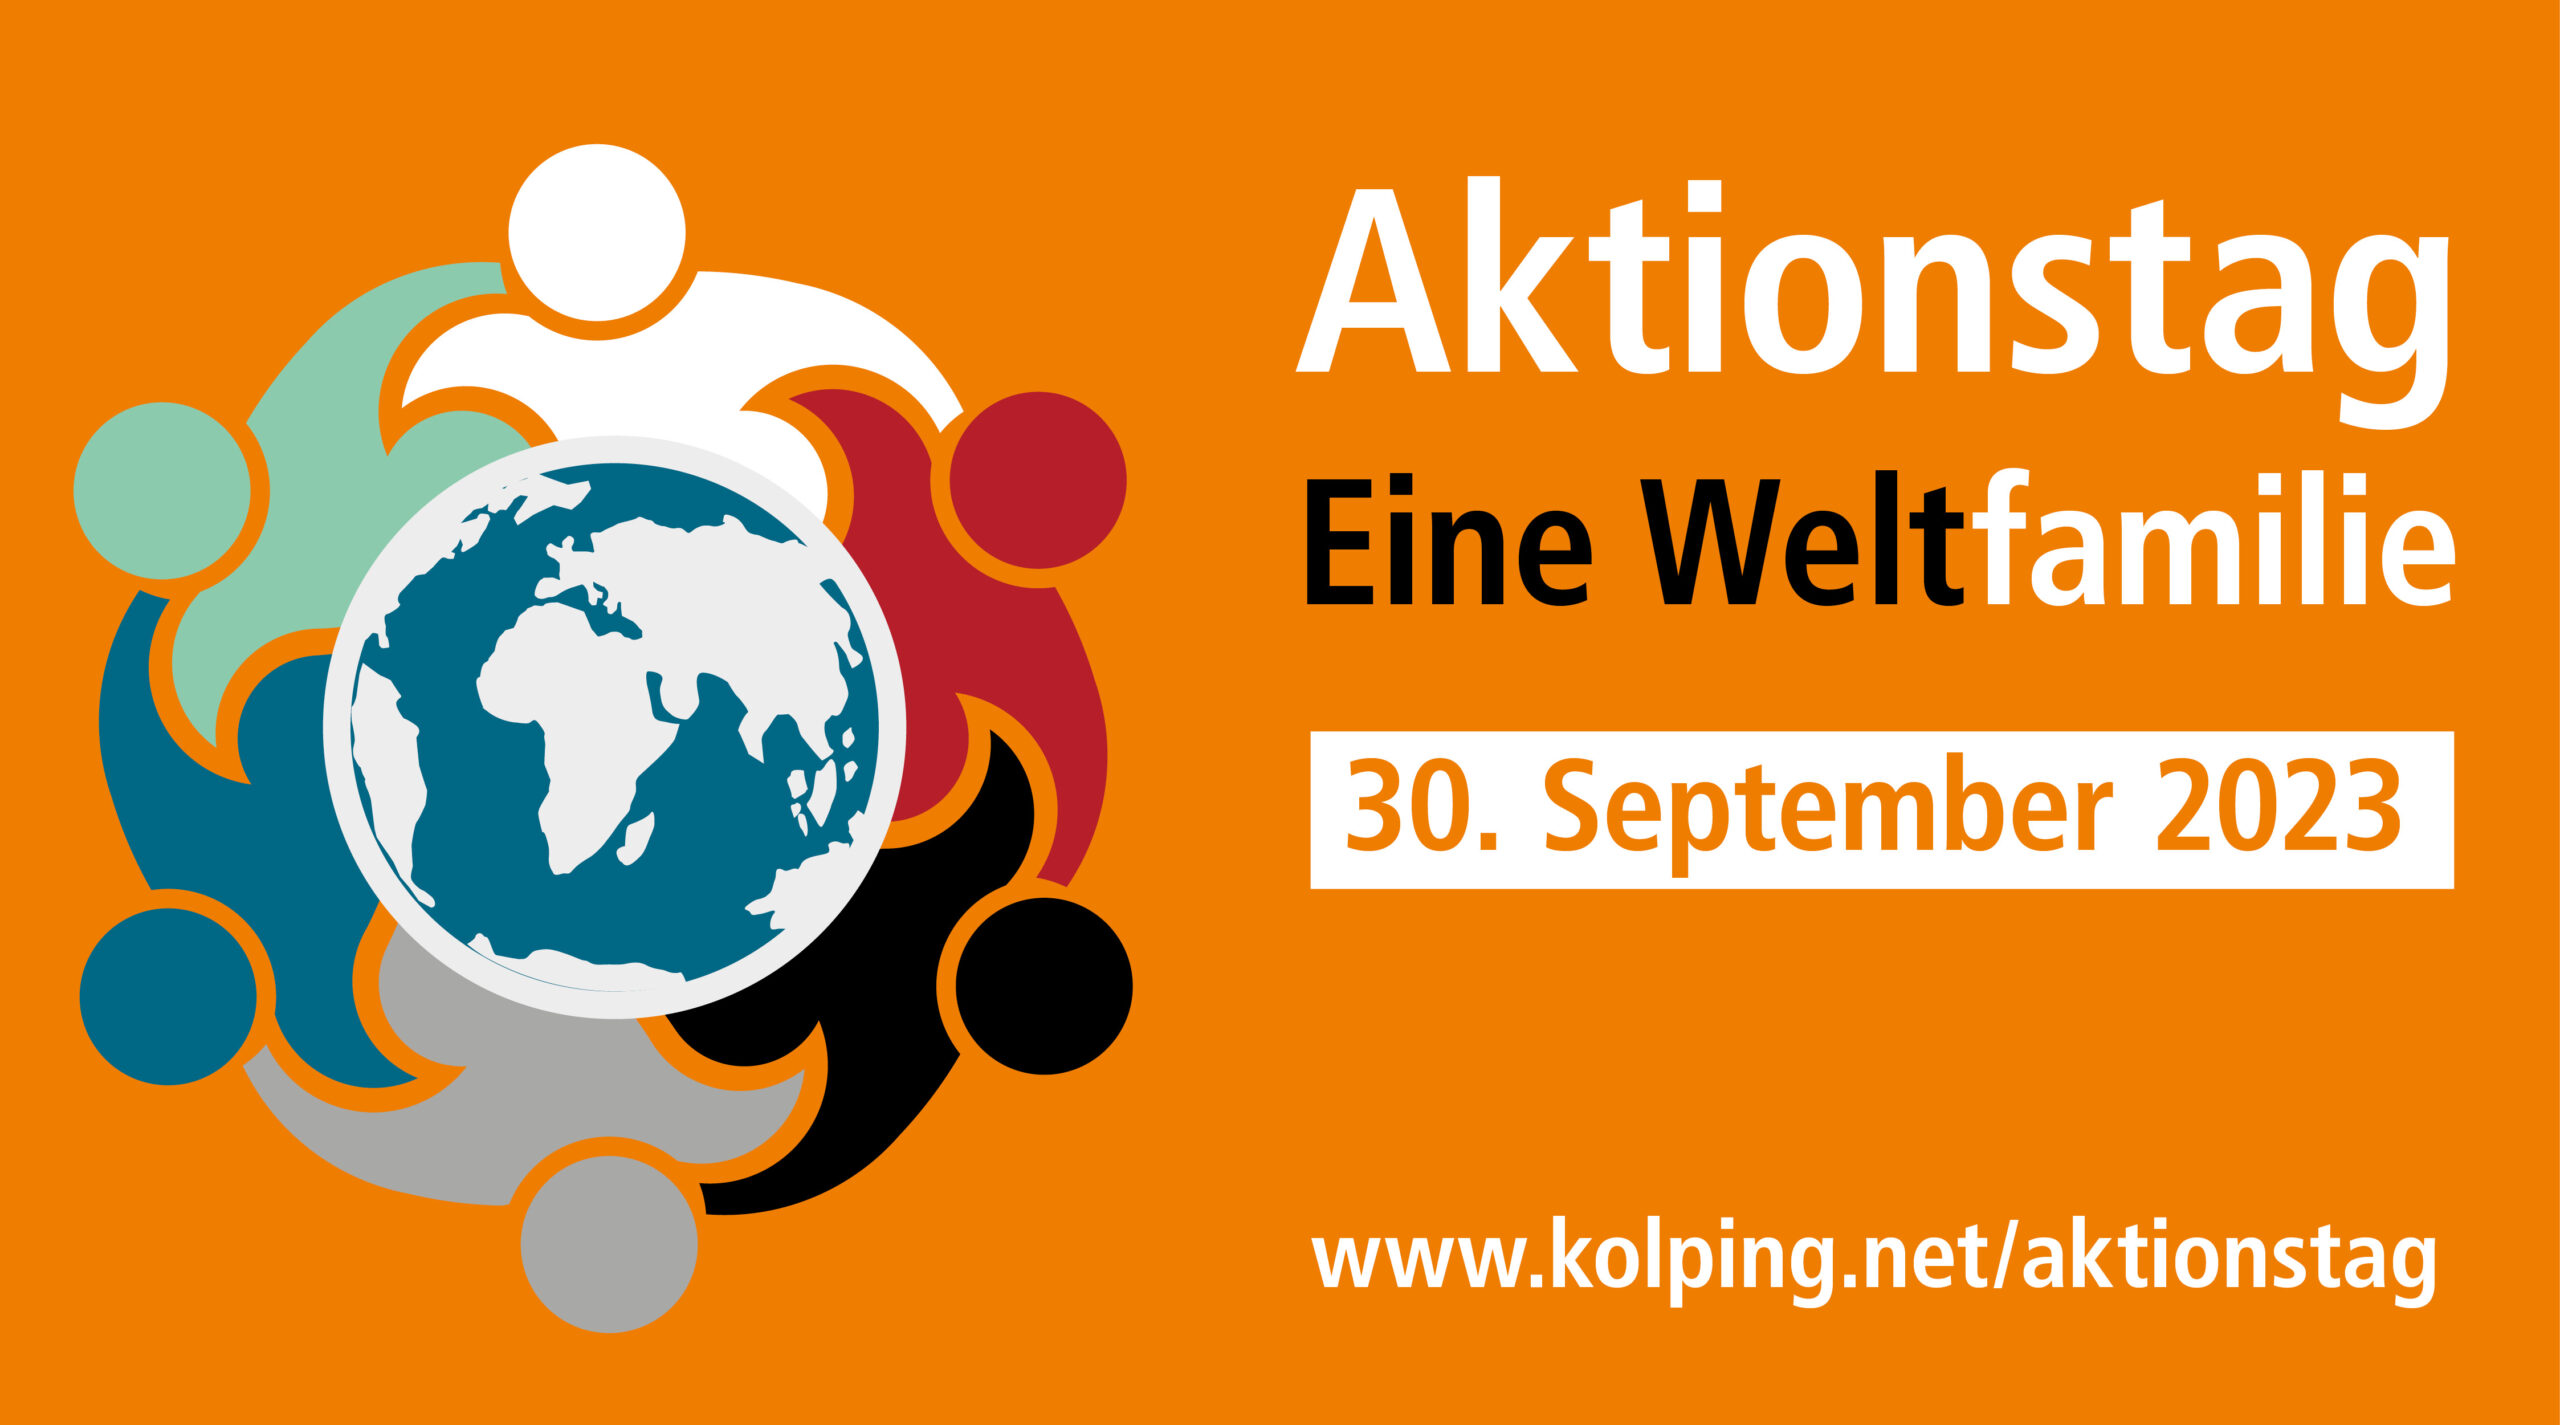 Save the date - Aktionstag Eine Weltfamilie von Kolping International am 30. September 2023